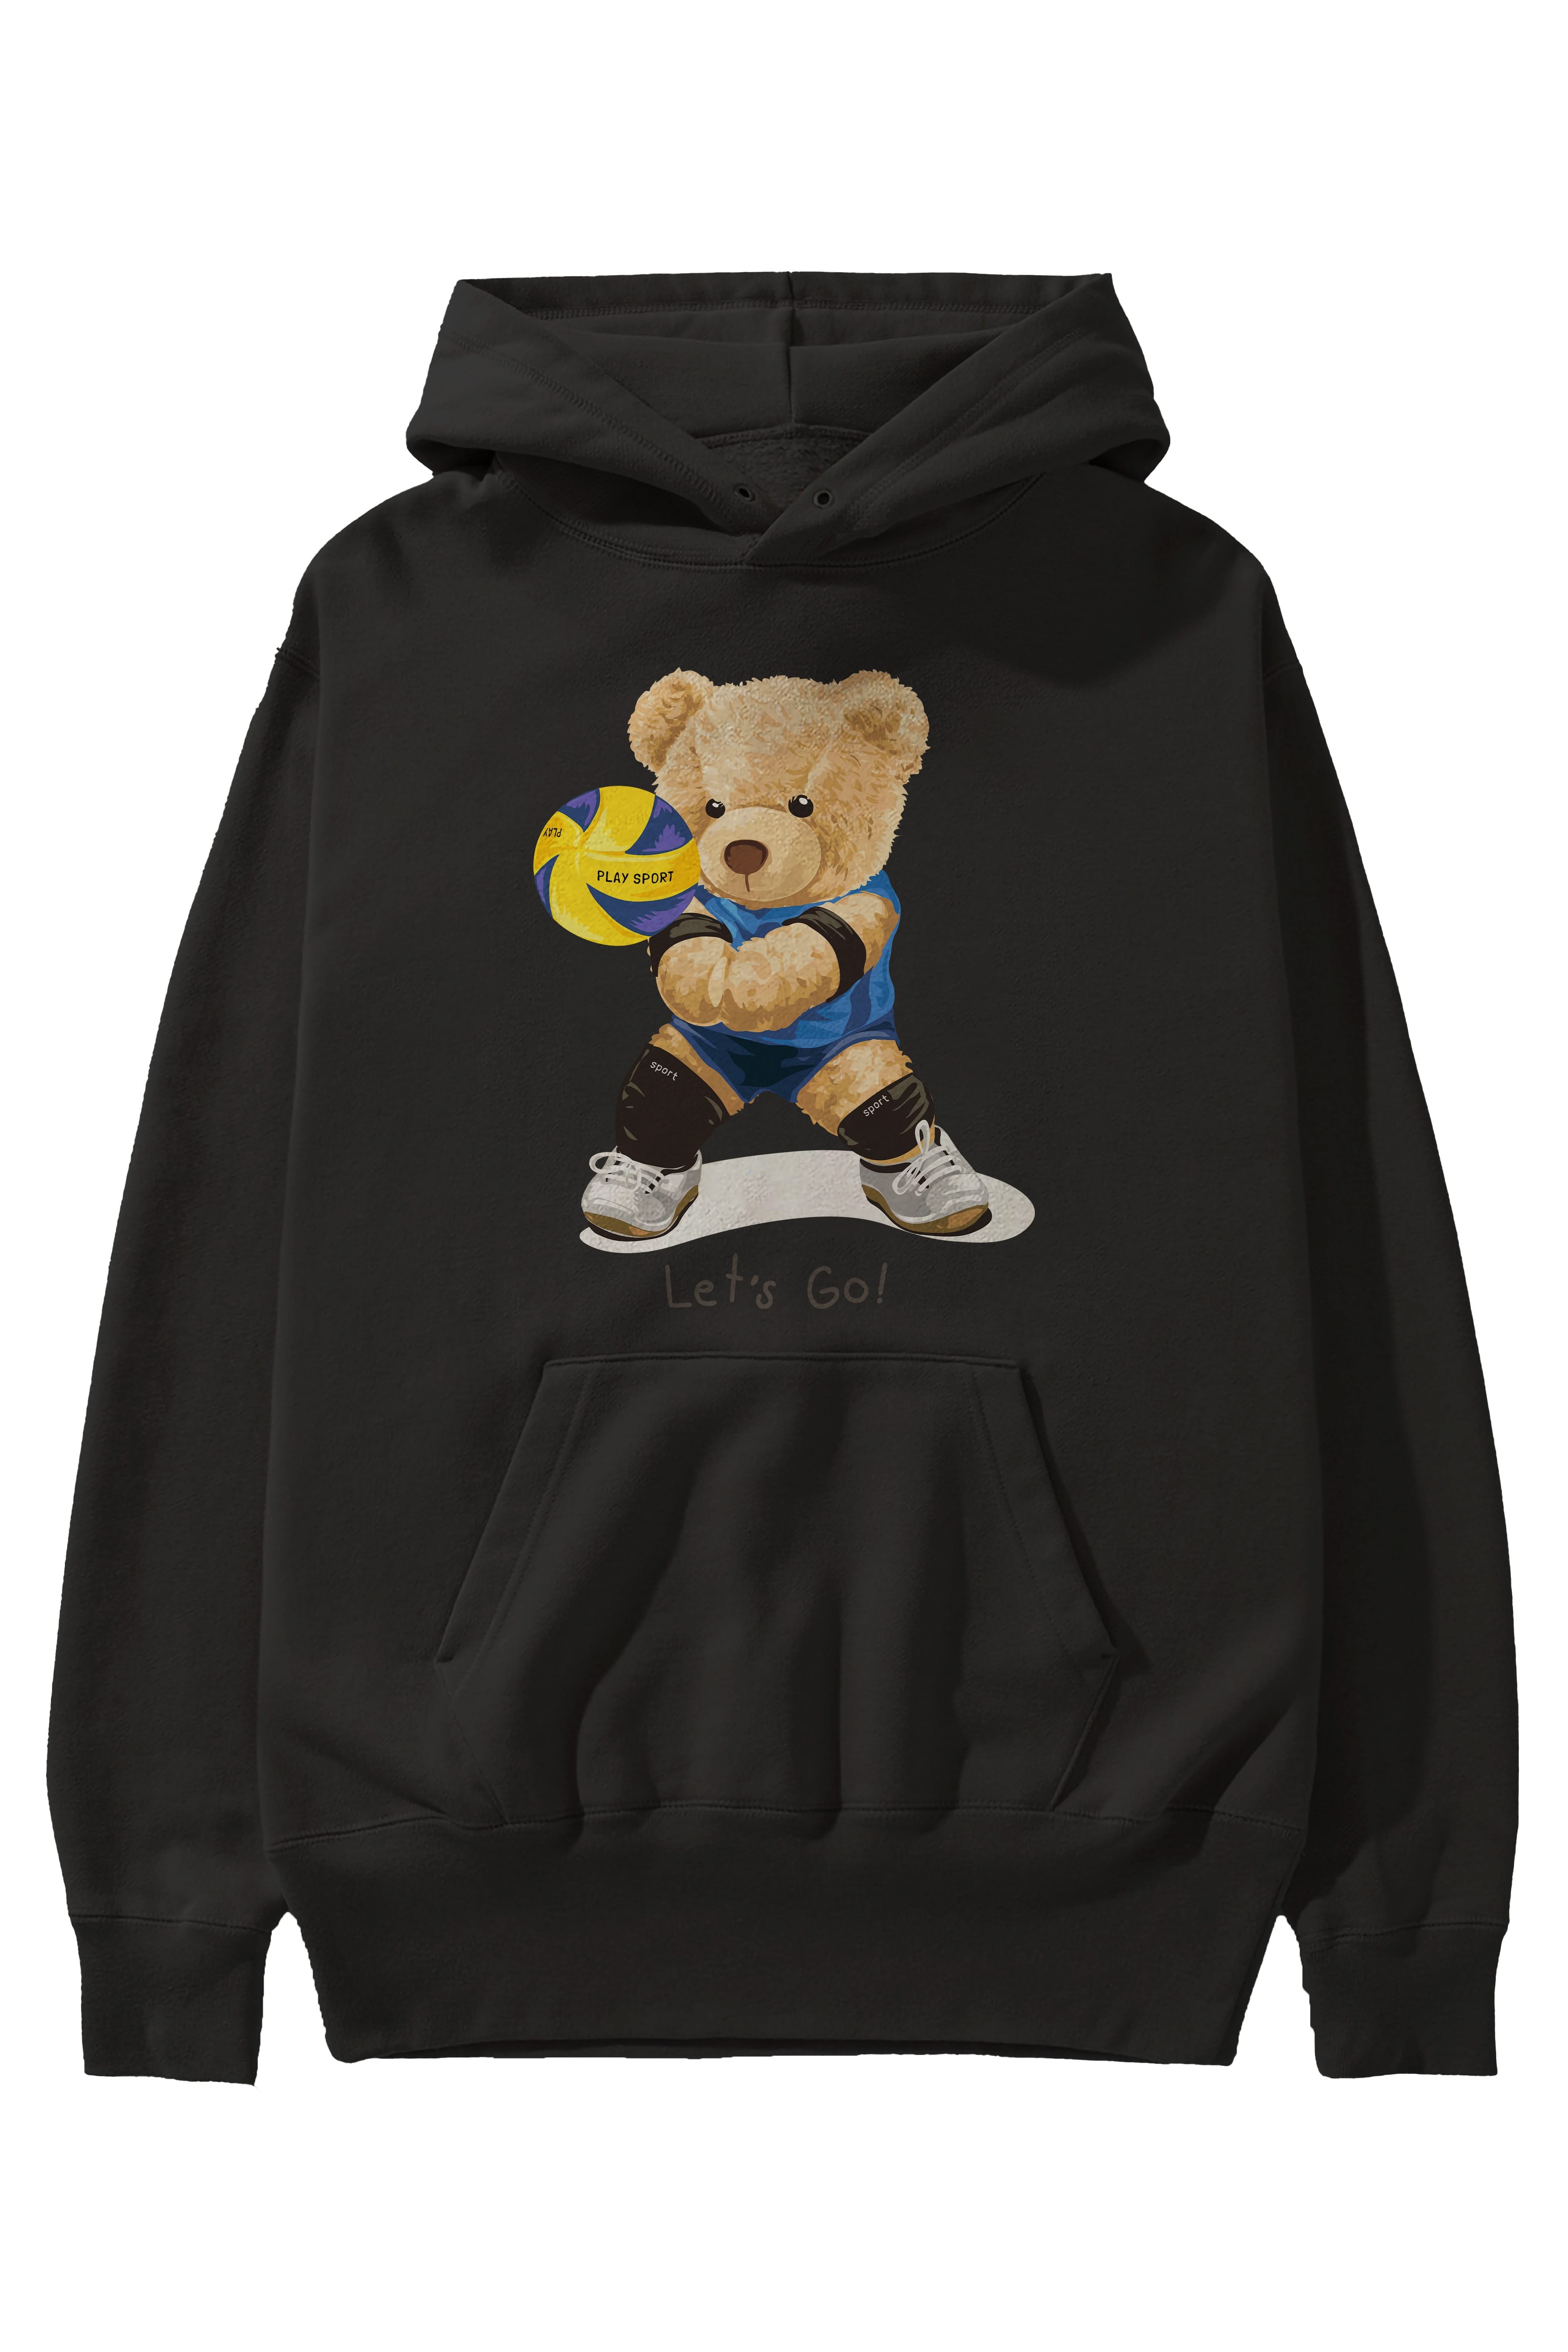 Teddy Bear Lets Go Ön Baskılı Hoodie Oversize Kapüşonlu Sweatshirt Erkek Kadın Unisex